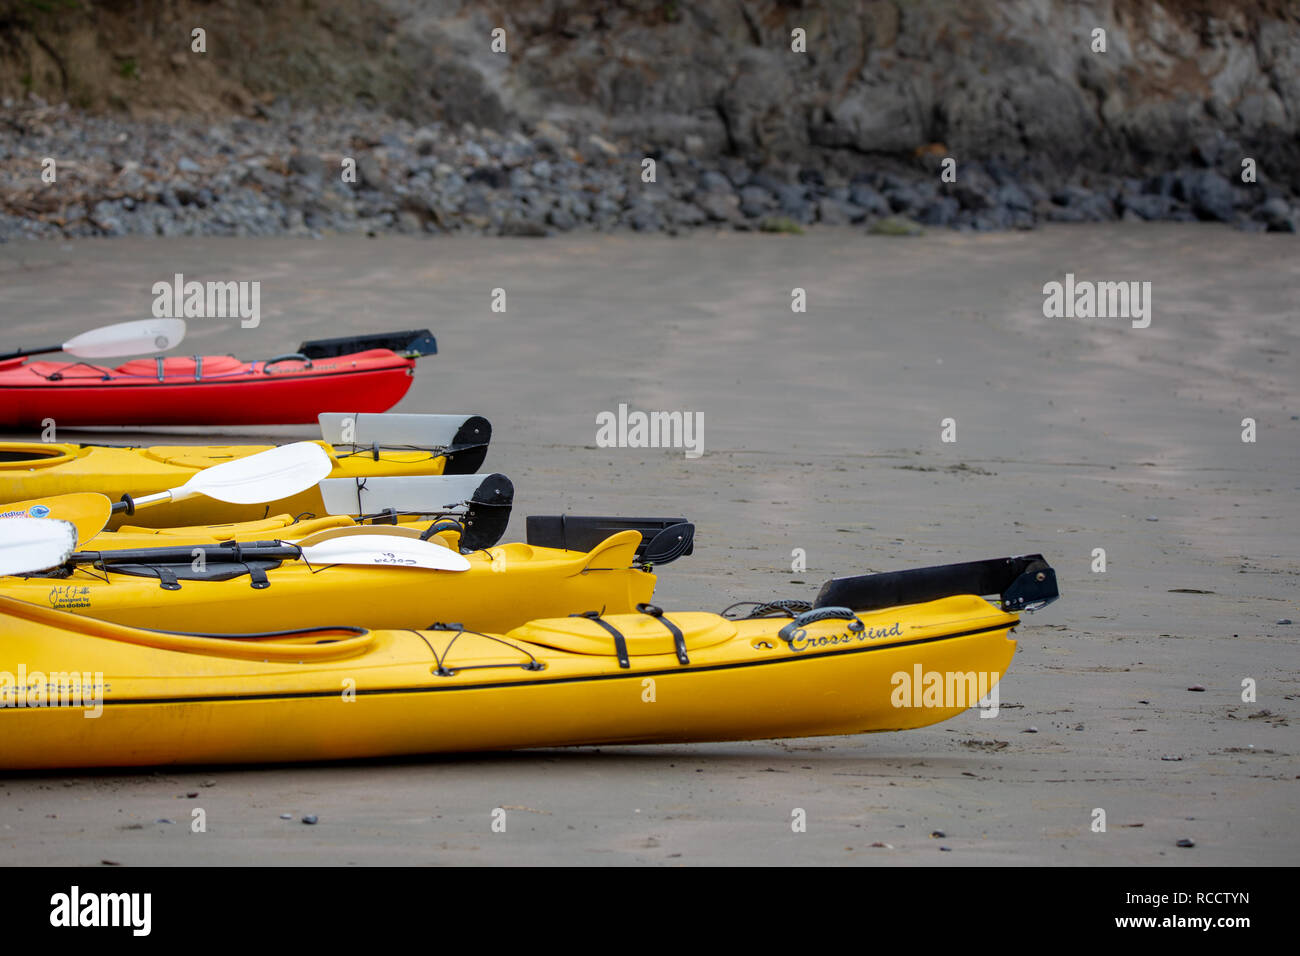 La baie aux puces, la péninsule de Banks, Nouvelle-Zélande - 6 janvier 2019 : Kayaks sur la plage prêt pour les touristes d'aller sur une expérience de la faune Banque D'Images